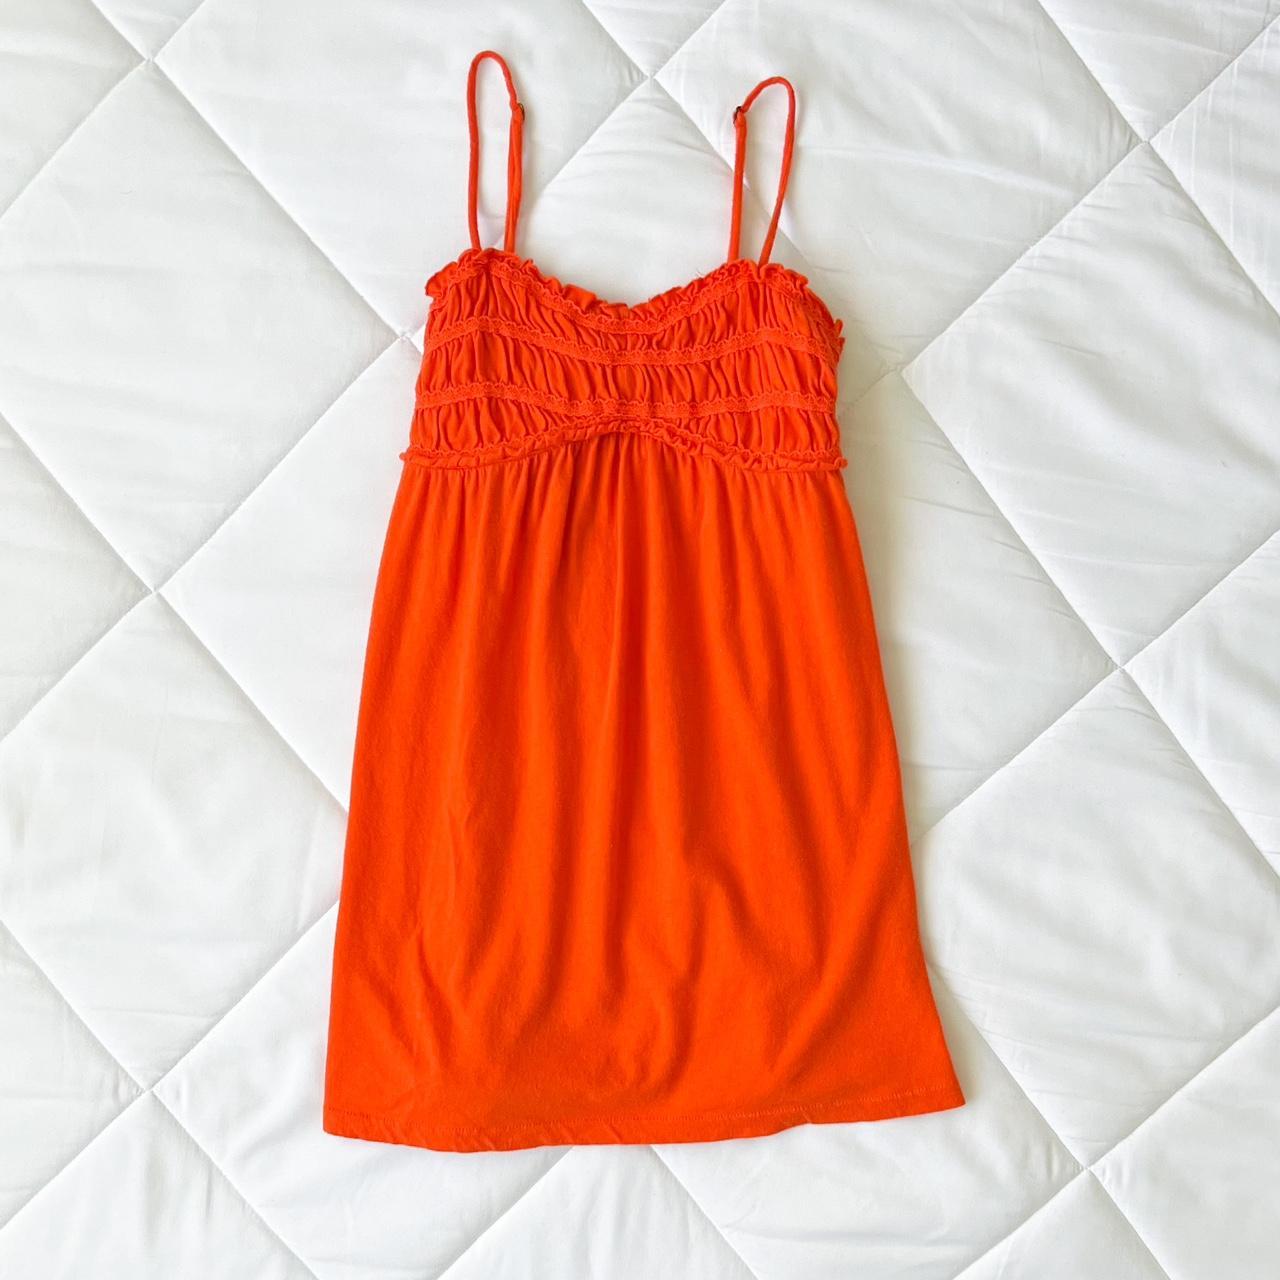 An orange slip dress